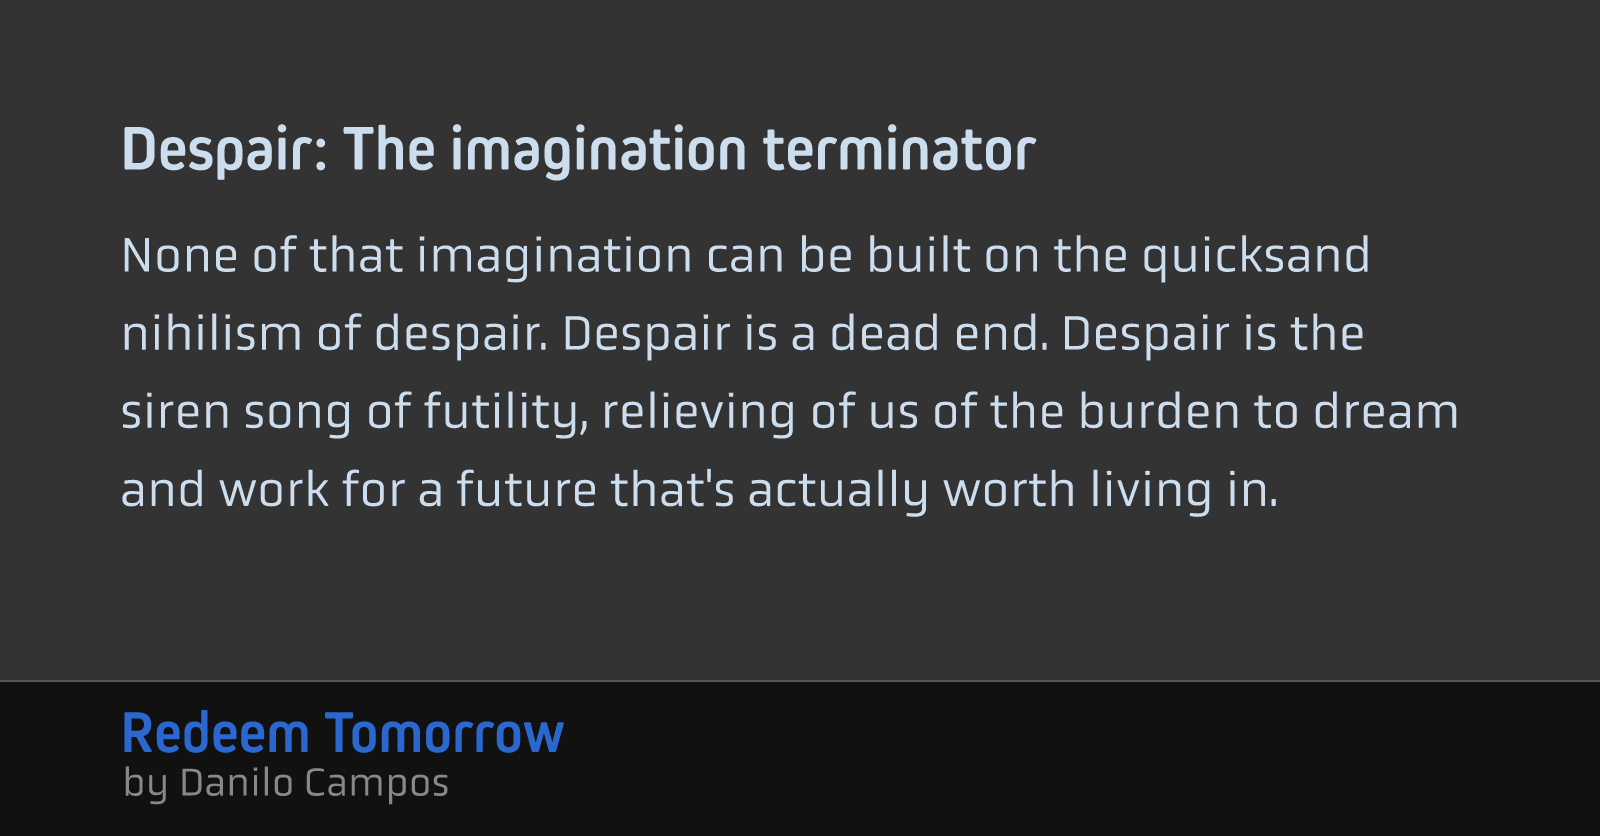 Despair: The imagination terminator